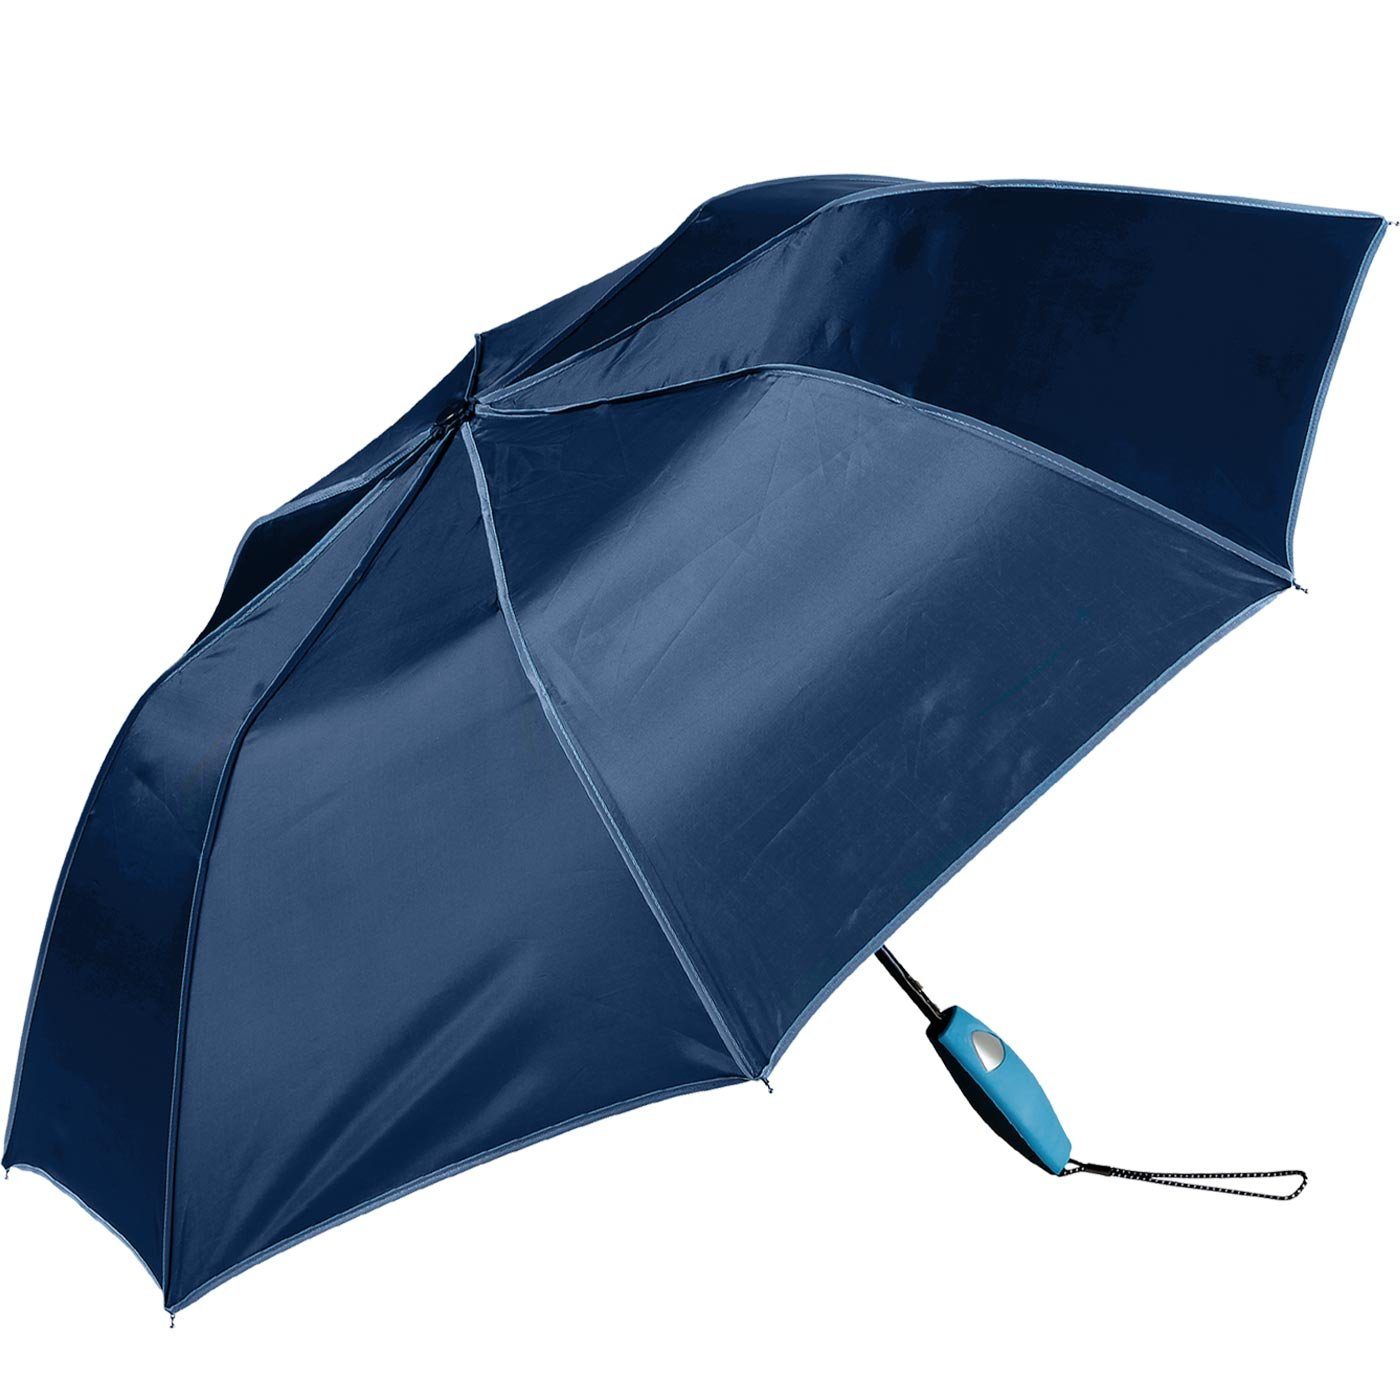 Impliva auffallend Taschenregenschirm Griff, Falconetti farblich passender navy-blau Auf-Automatik